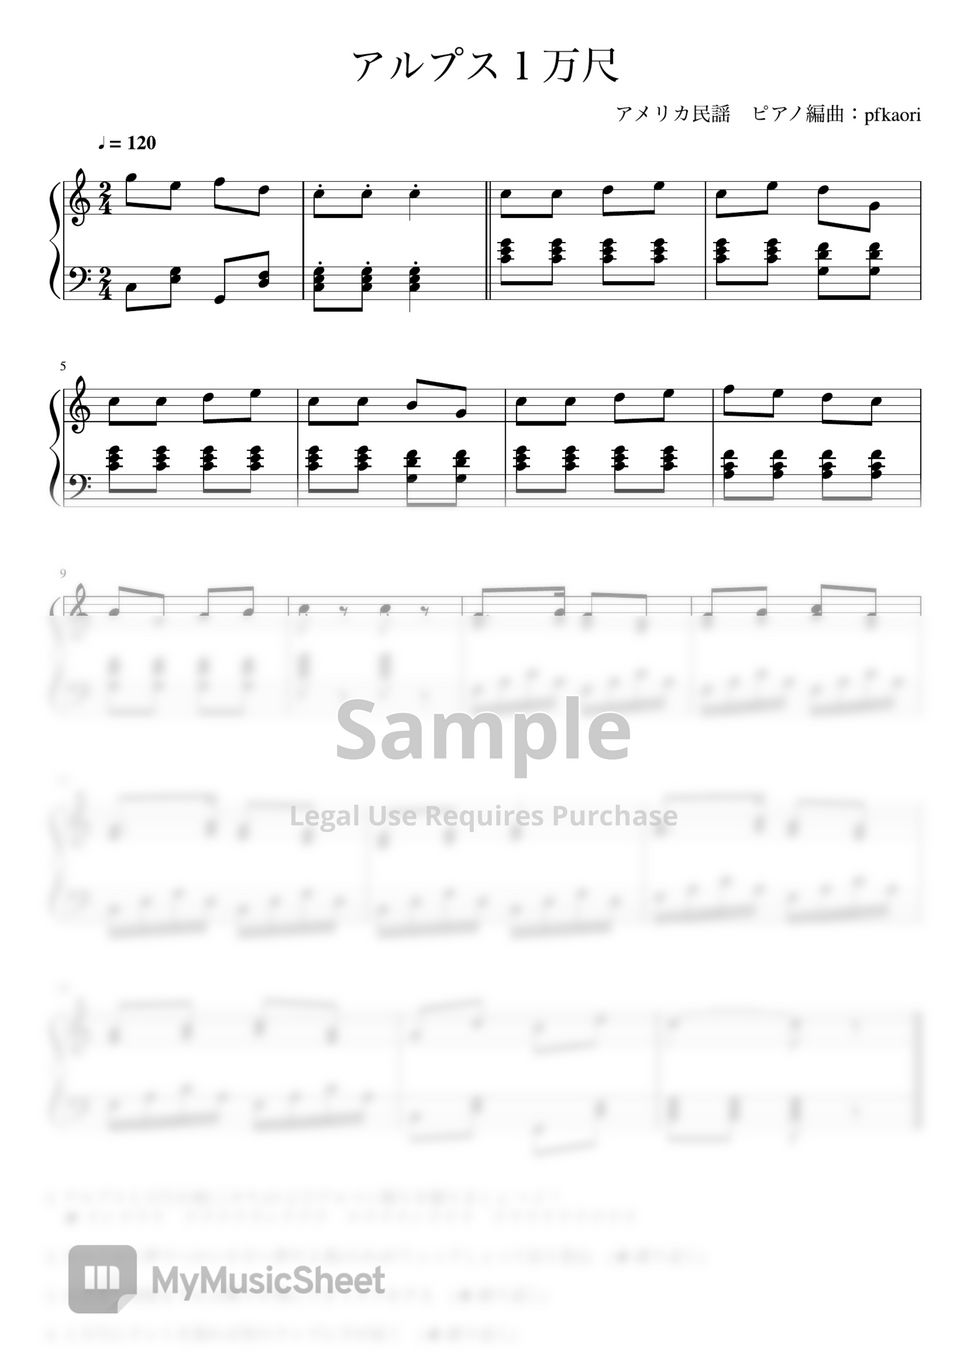 YankeeDoodle (Cdur/Pianosolo beginner〜intermeditate) Sheets by pfkaori